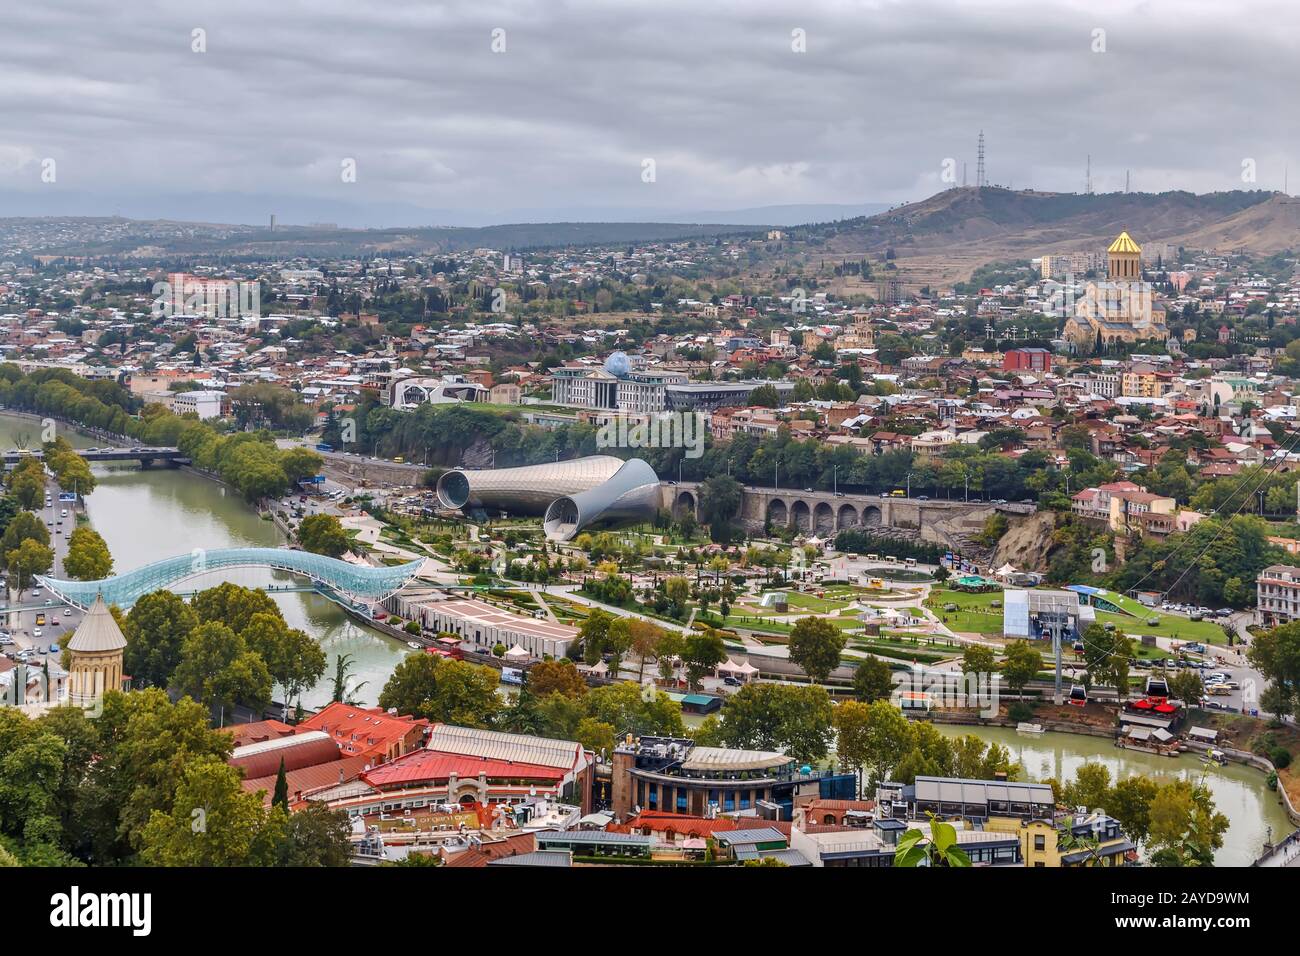 View of Tbilisi, Georgia Stock Photo